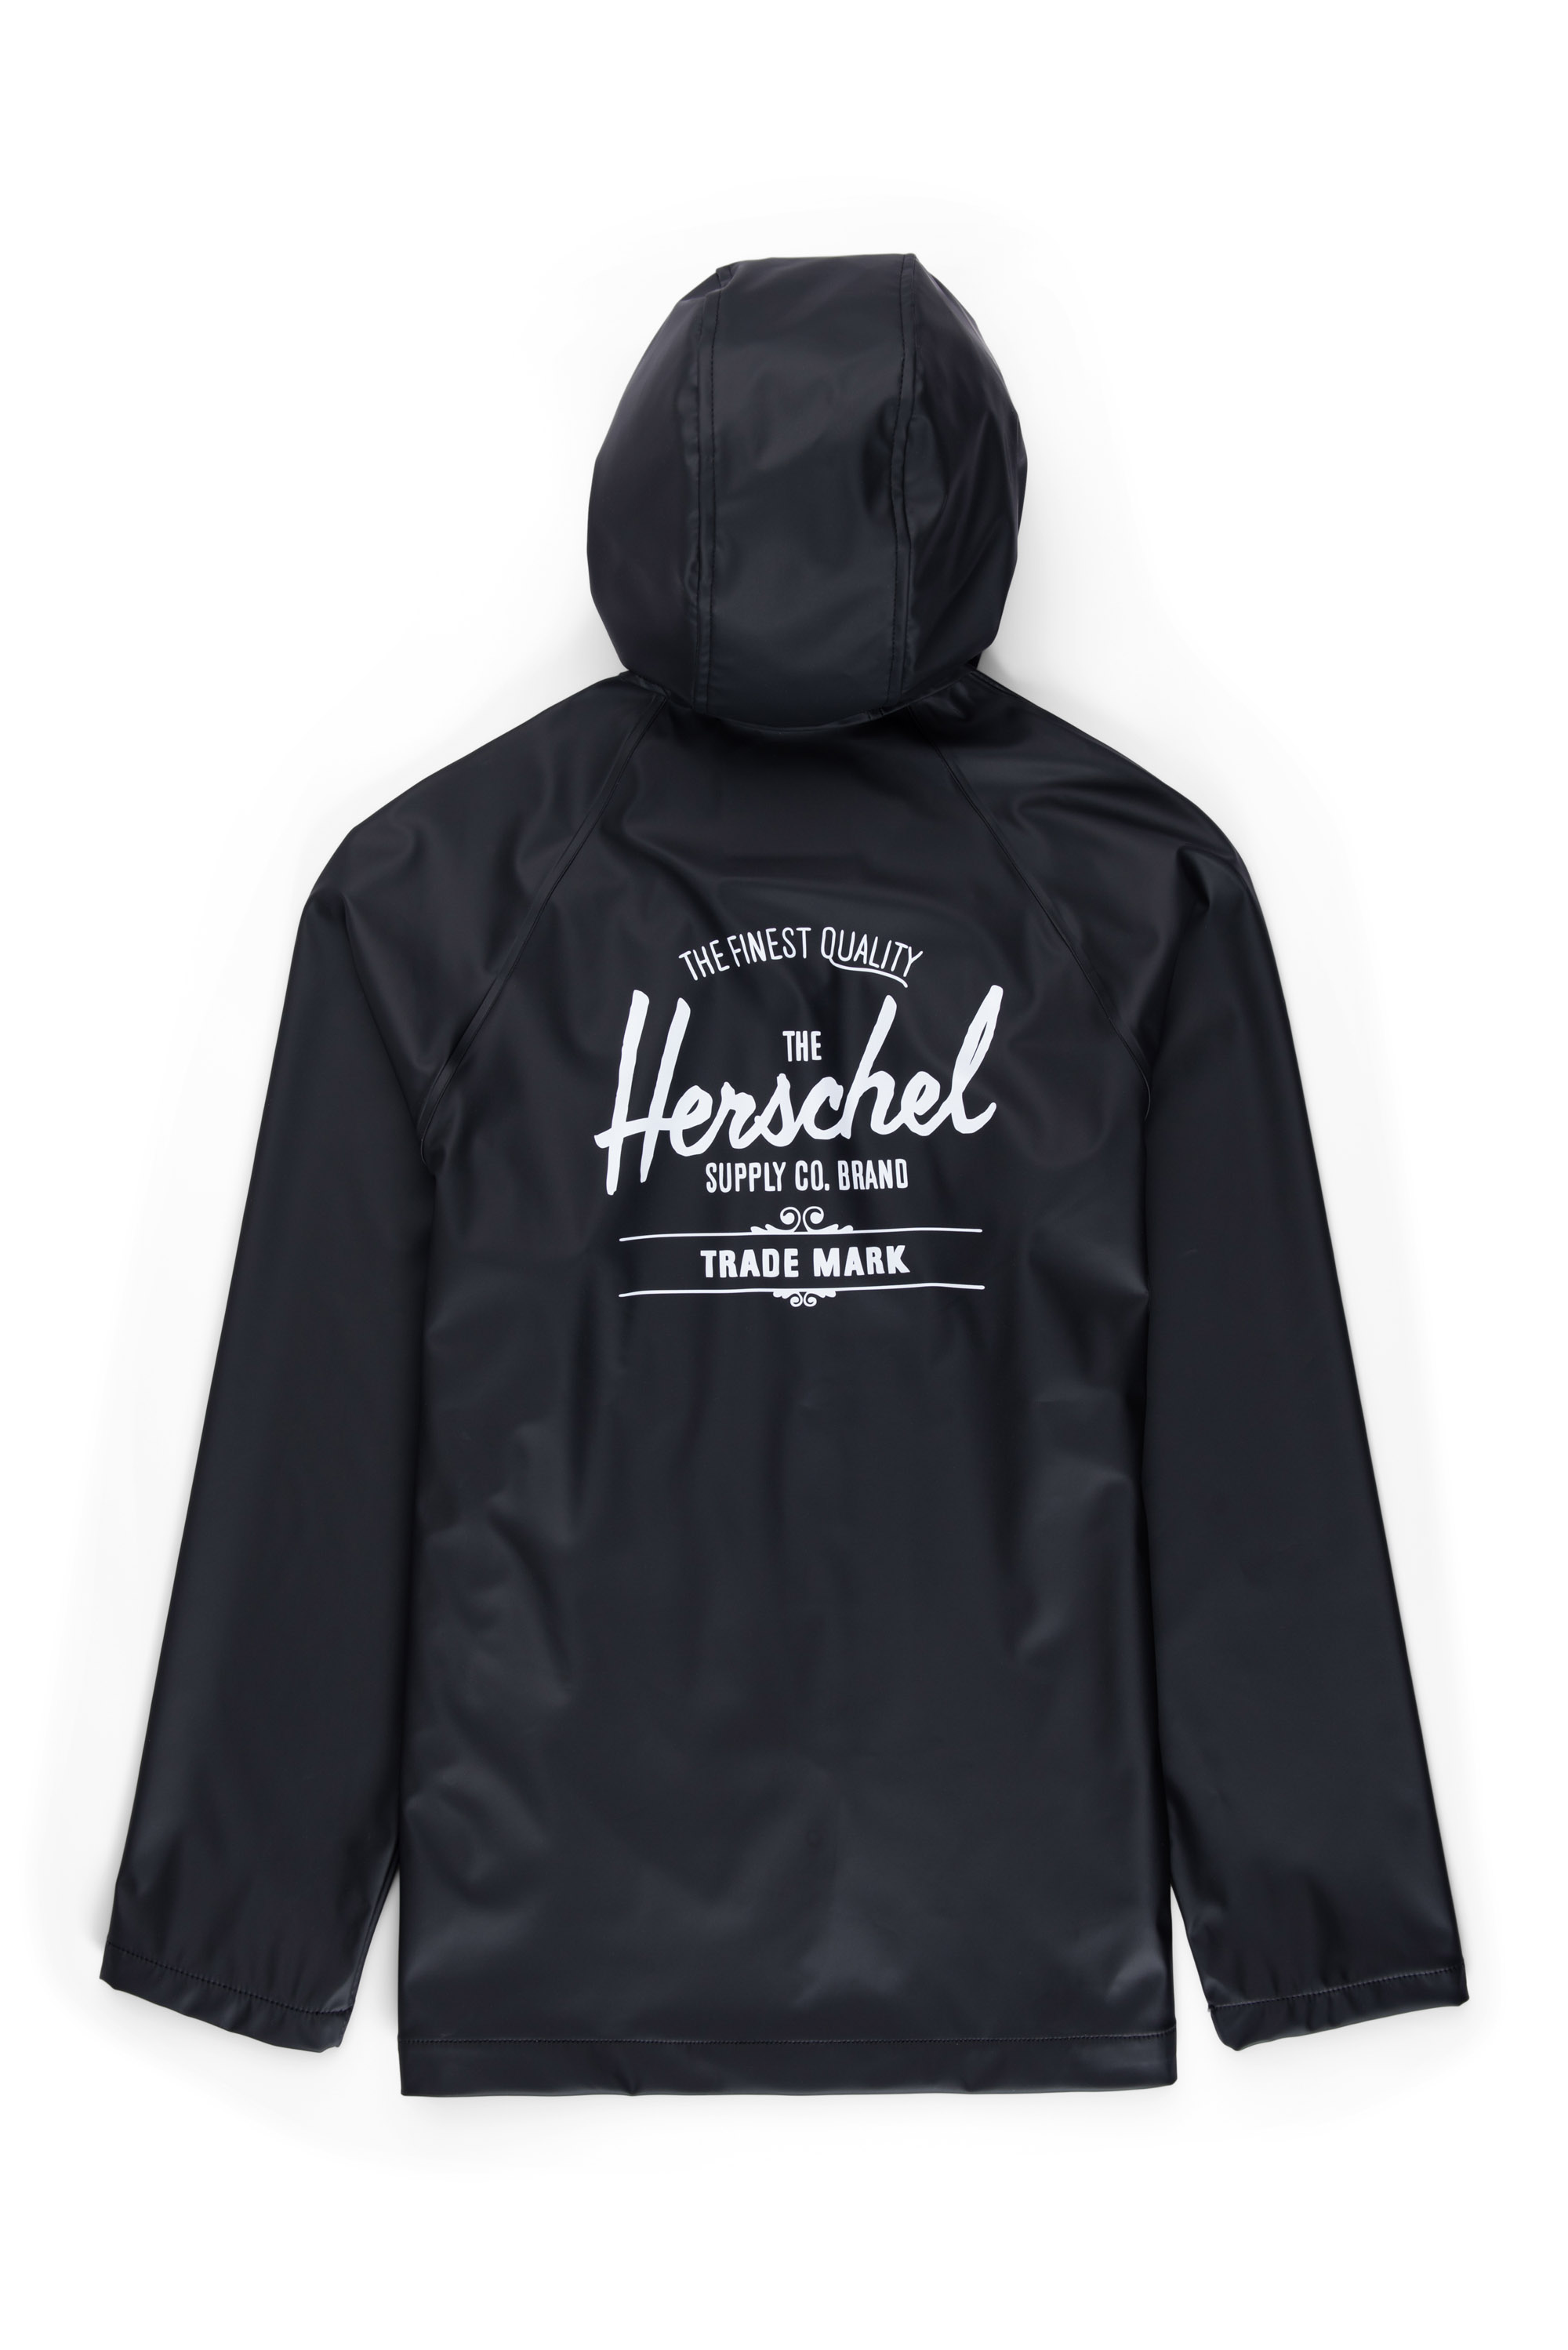 Herschel - Men's Rainwear Classic - Black/White Classic Logo 2